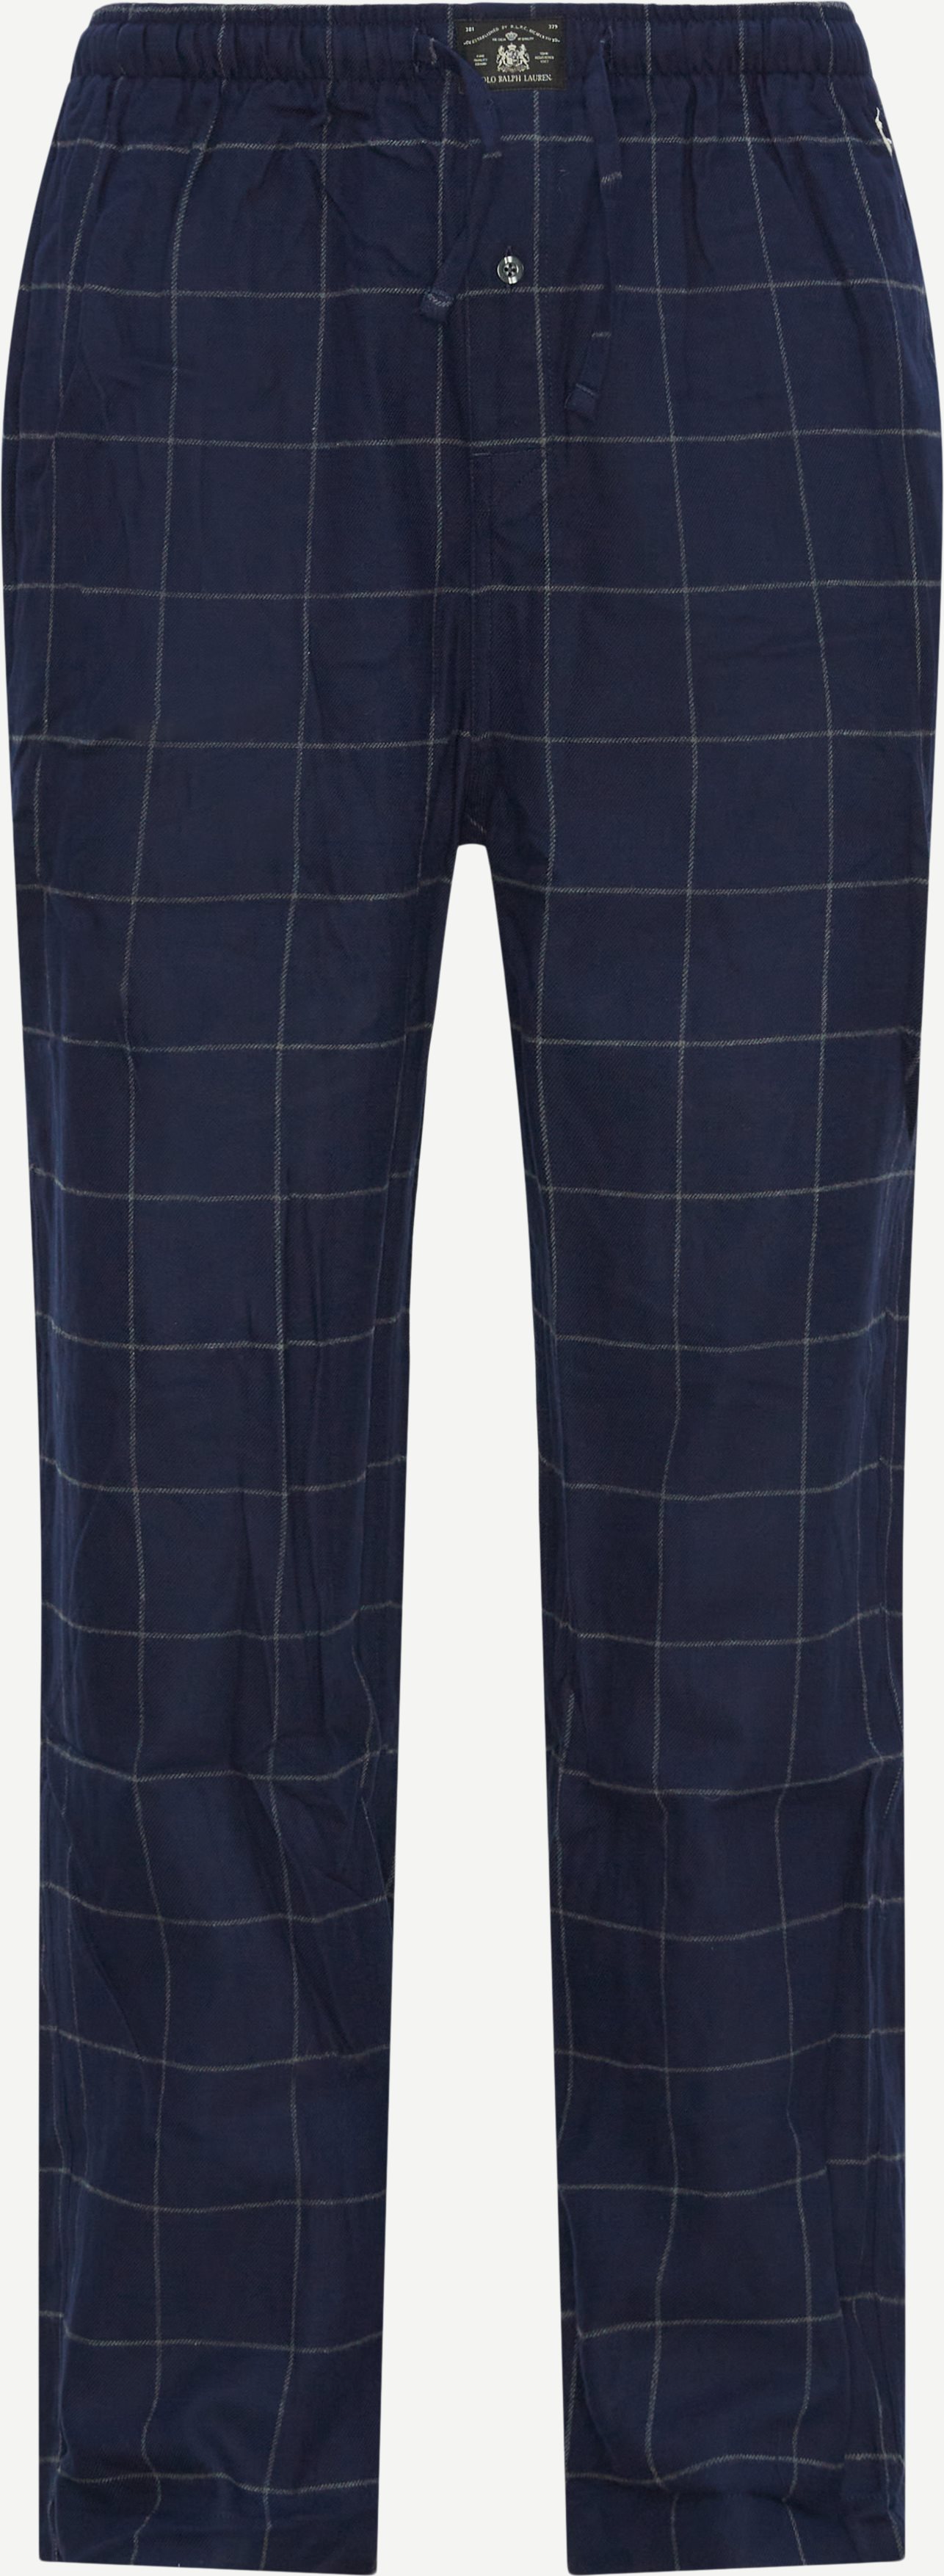 Polo Ralph Lauren Underkläder 714754037 PJ PANT Blå